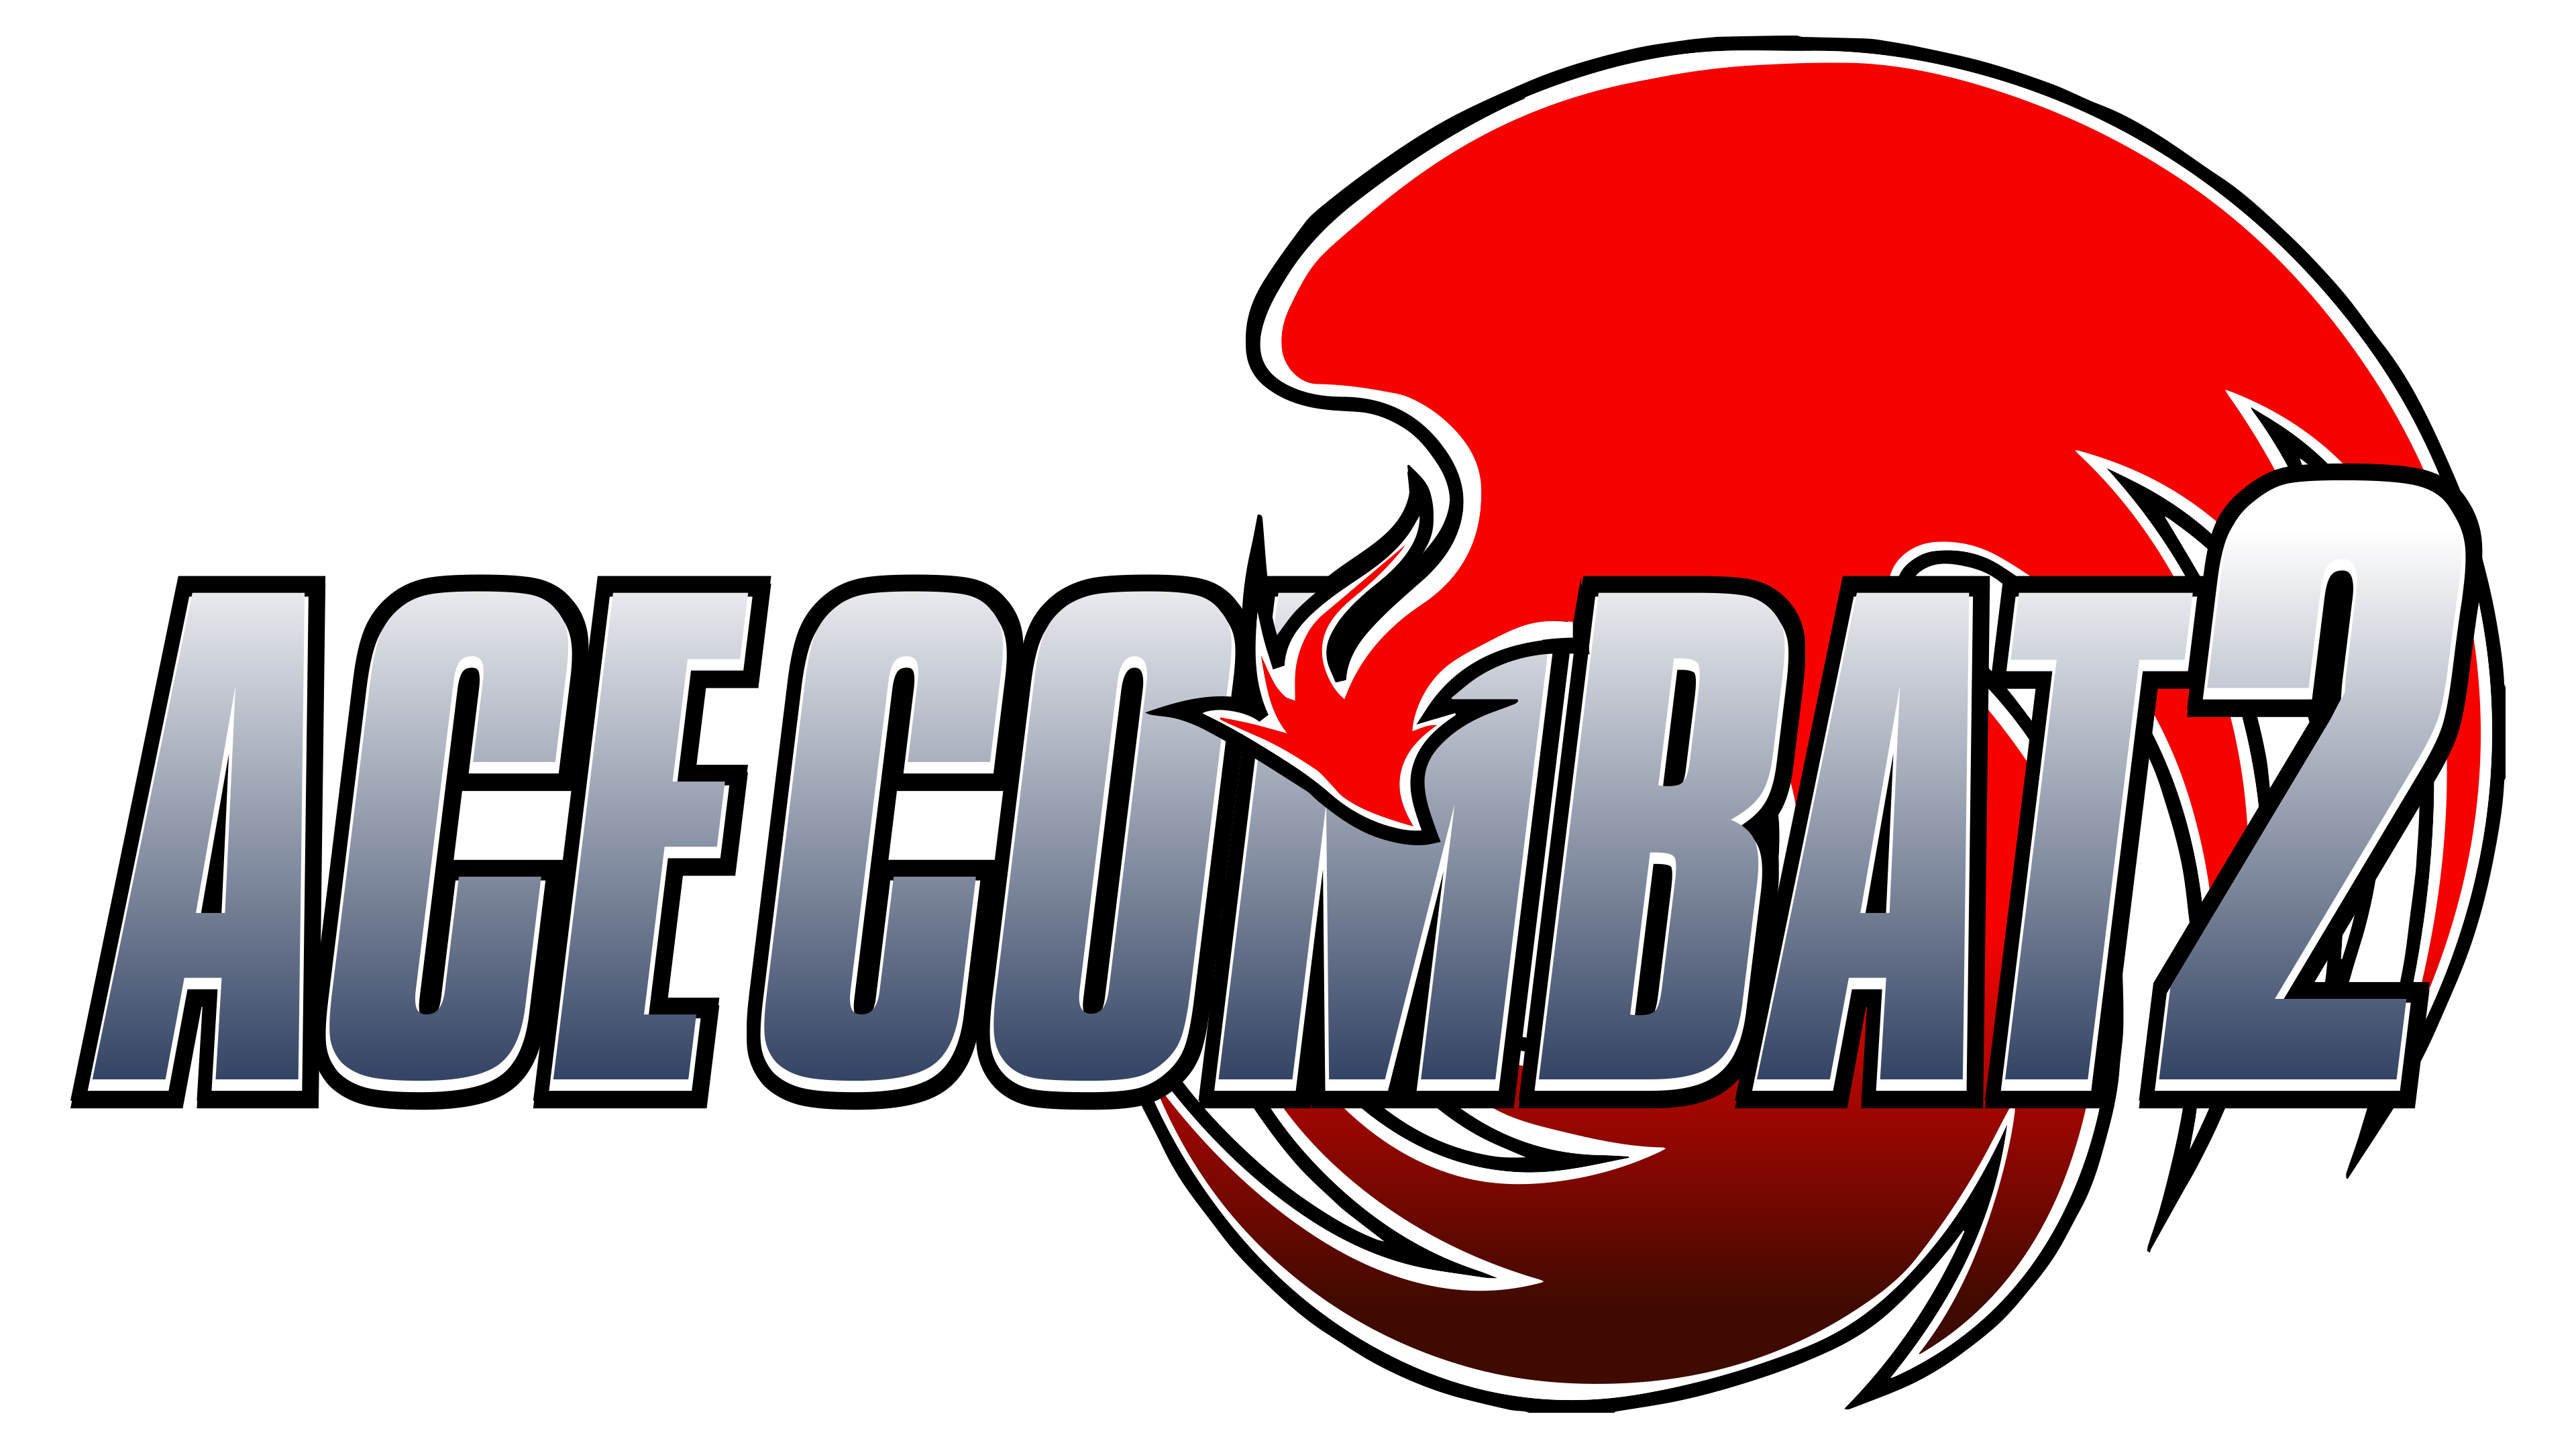 Ace combat 2. Ace Combat 2 русская версия. Ace Combat logo. Ace Combat 2 logo.